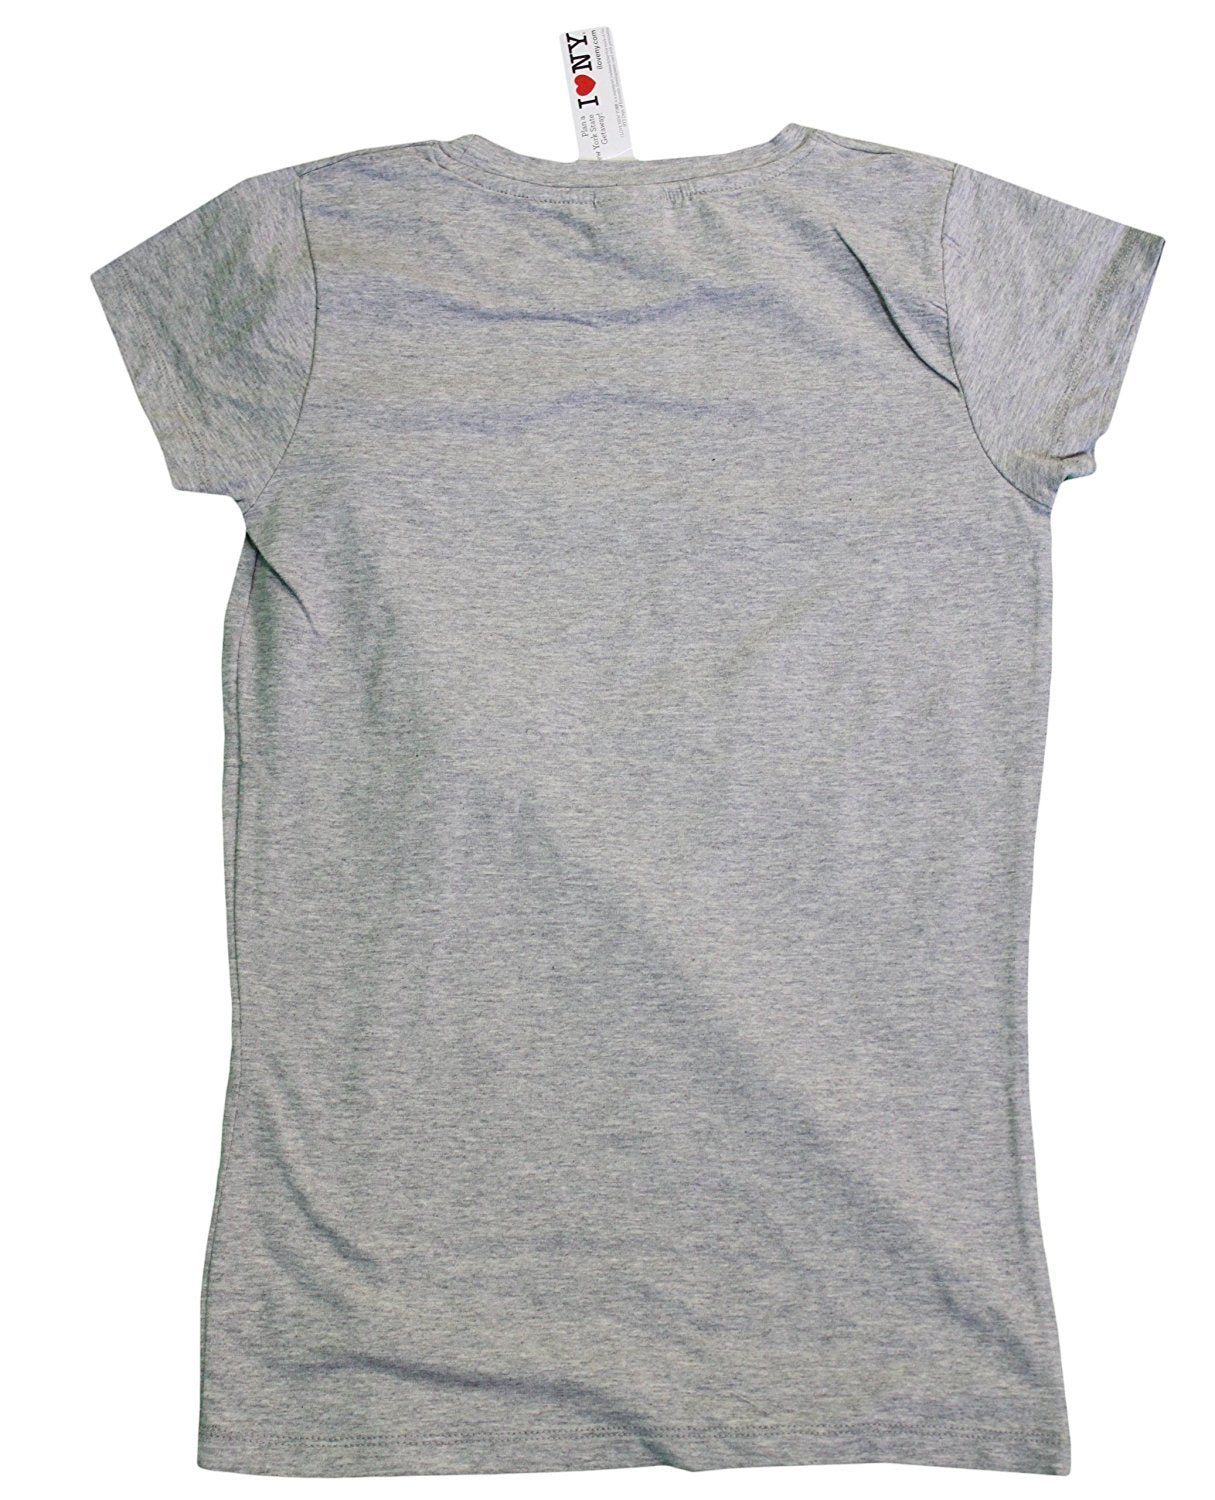 I Love NY New York Womens T-Shirt Spandex Tee Heart Gray